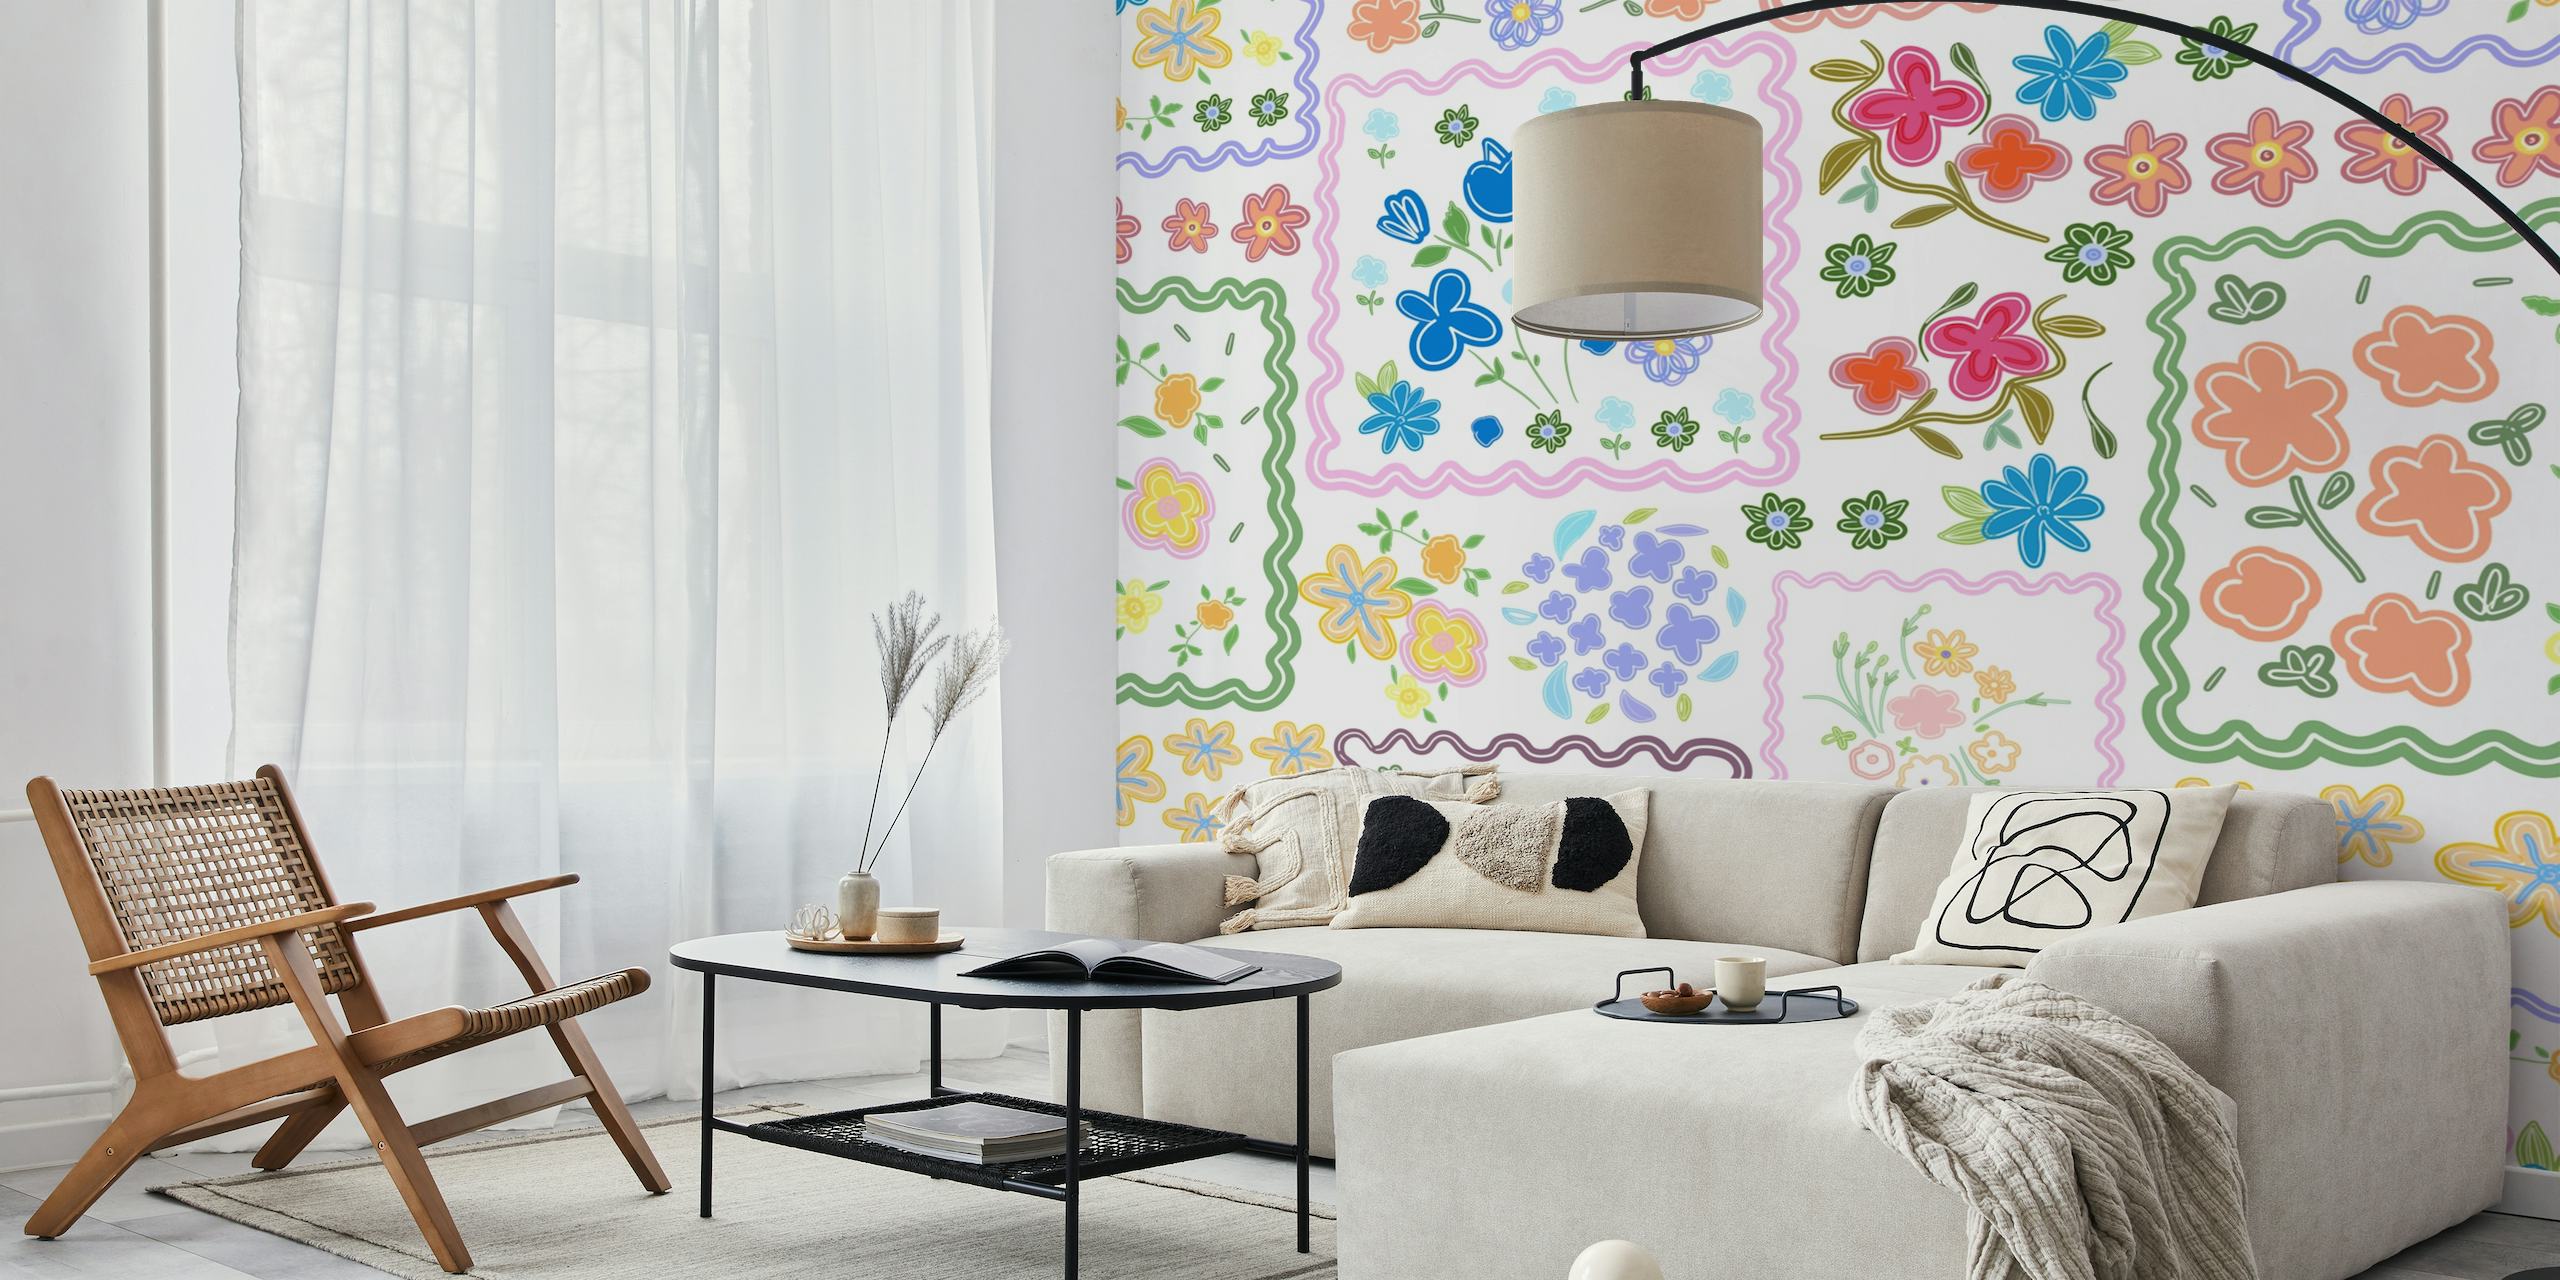 Värikäs patchwork-tyylinen kukkainen seinämaalaus, jossa on erilaisia kukkia ja kuvioita